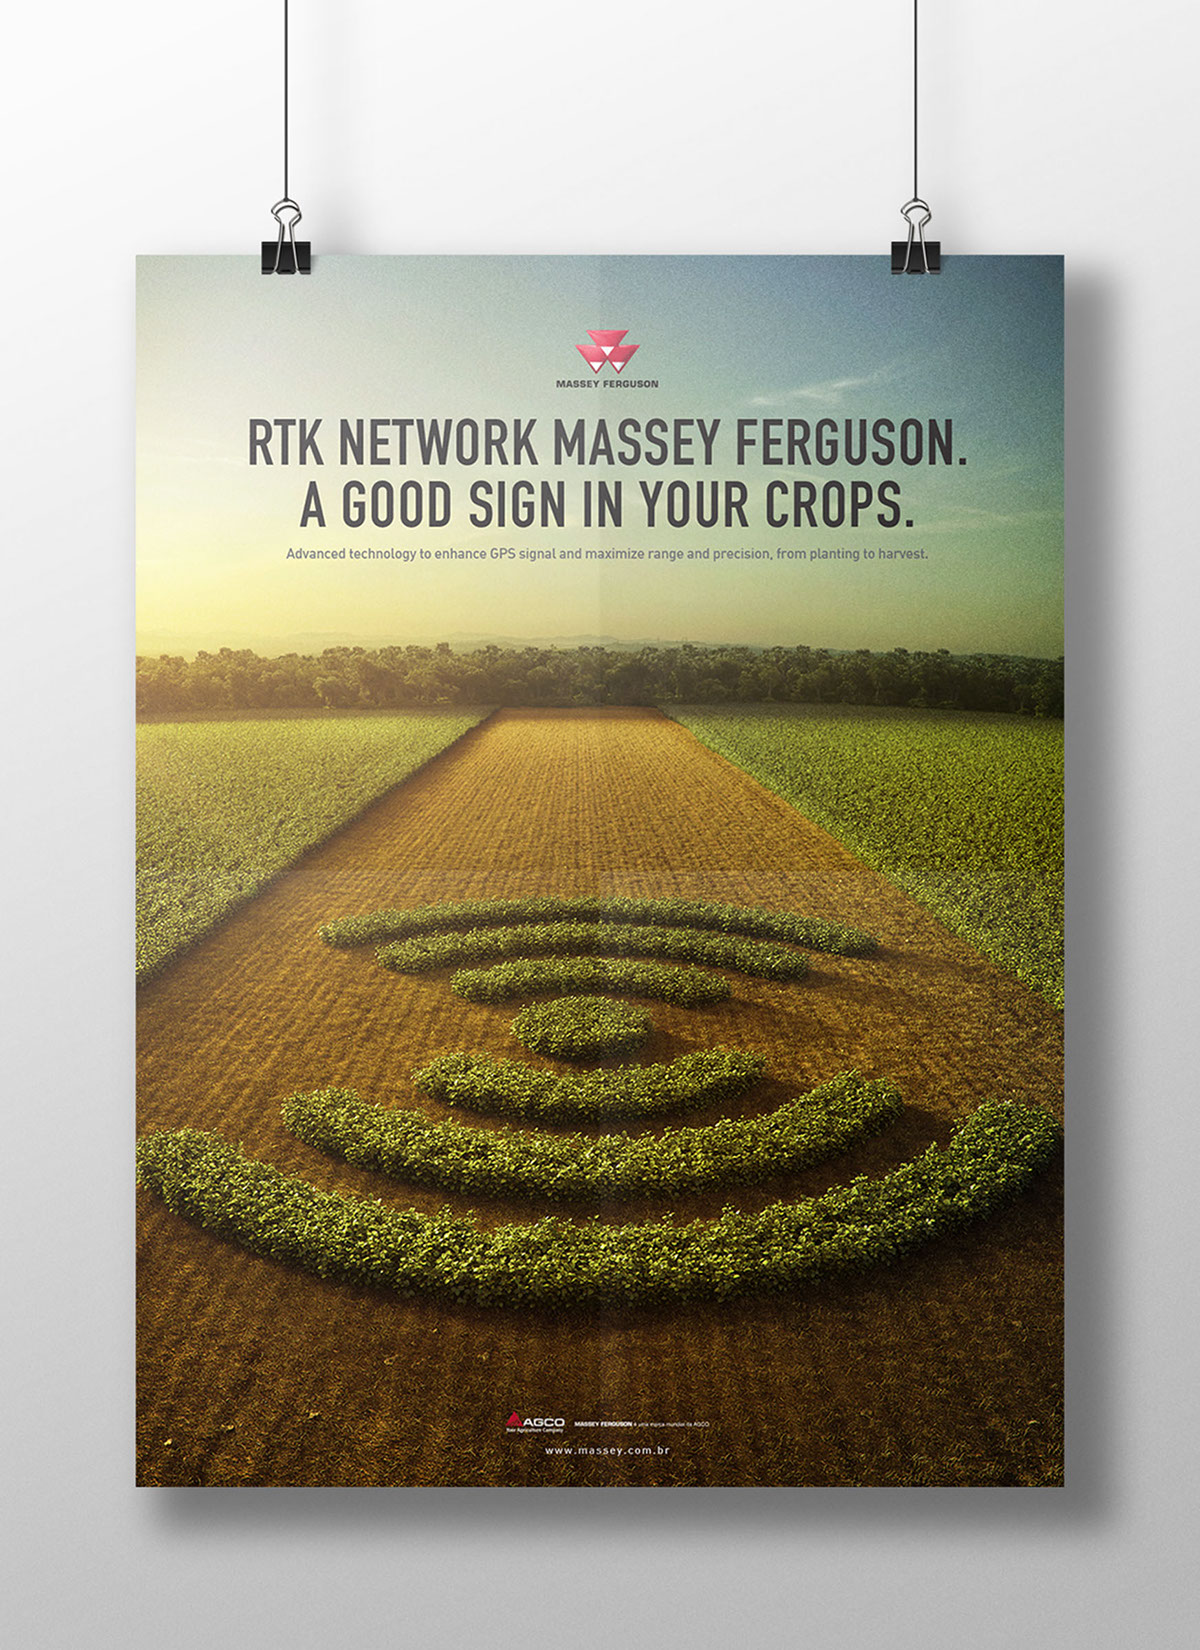 Massey ferguson campo lavoura ground sinal PRODUTIVIDADE farming agriculture antenna gps sign network precision